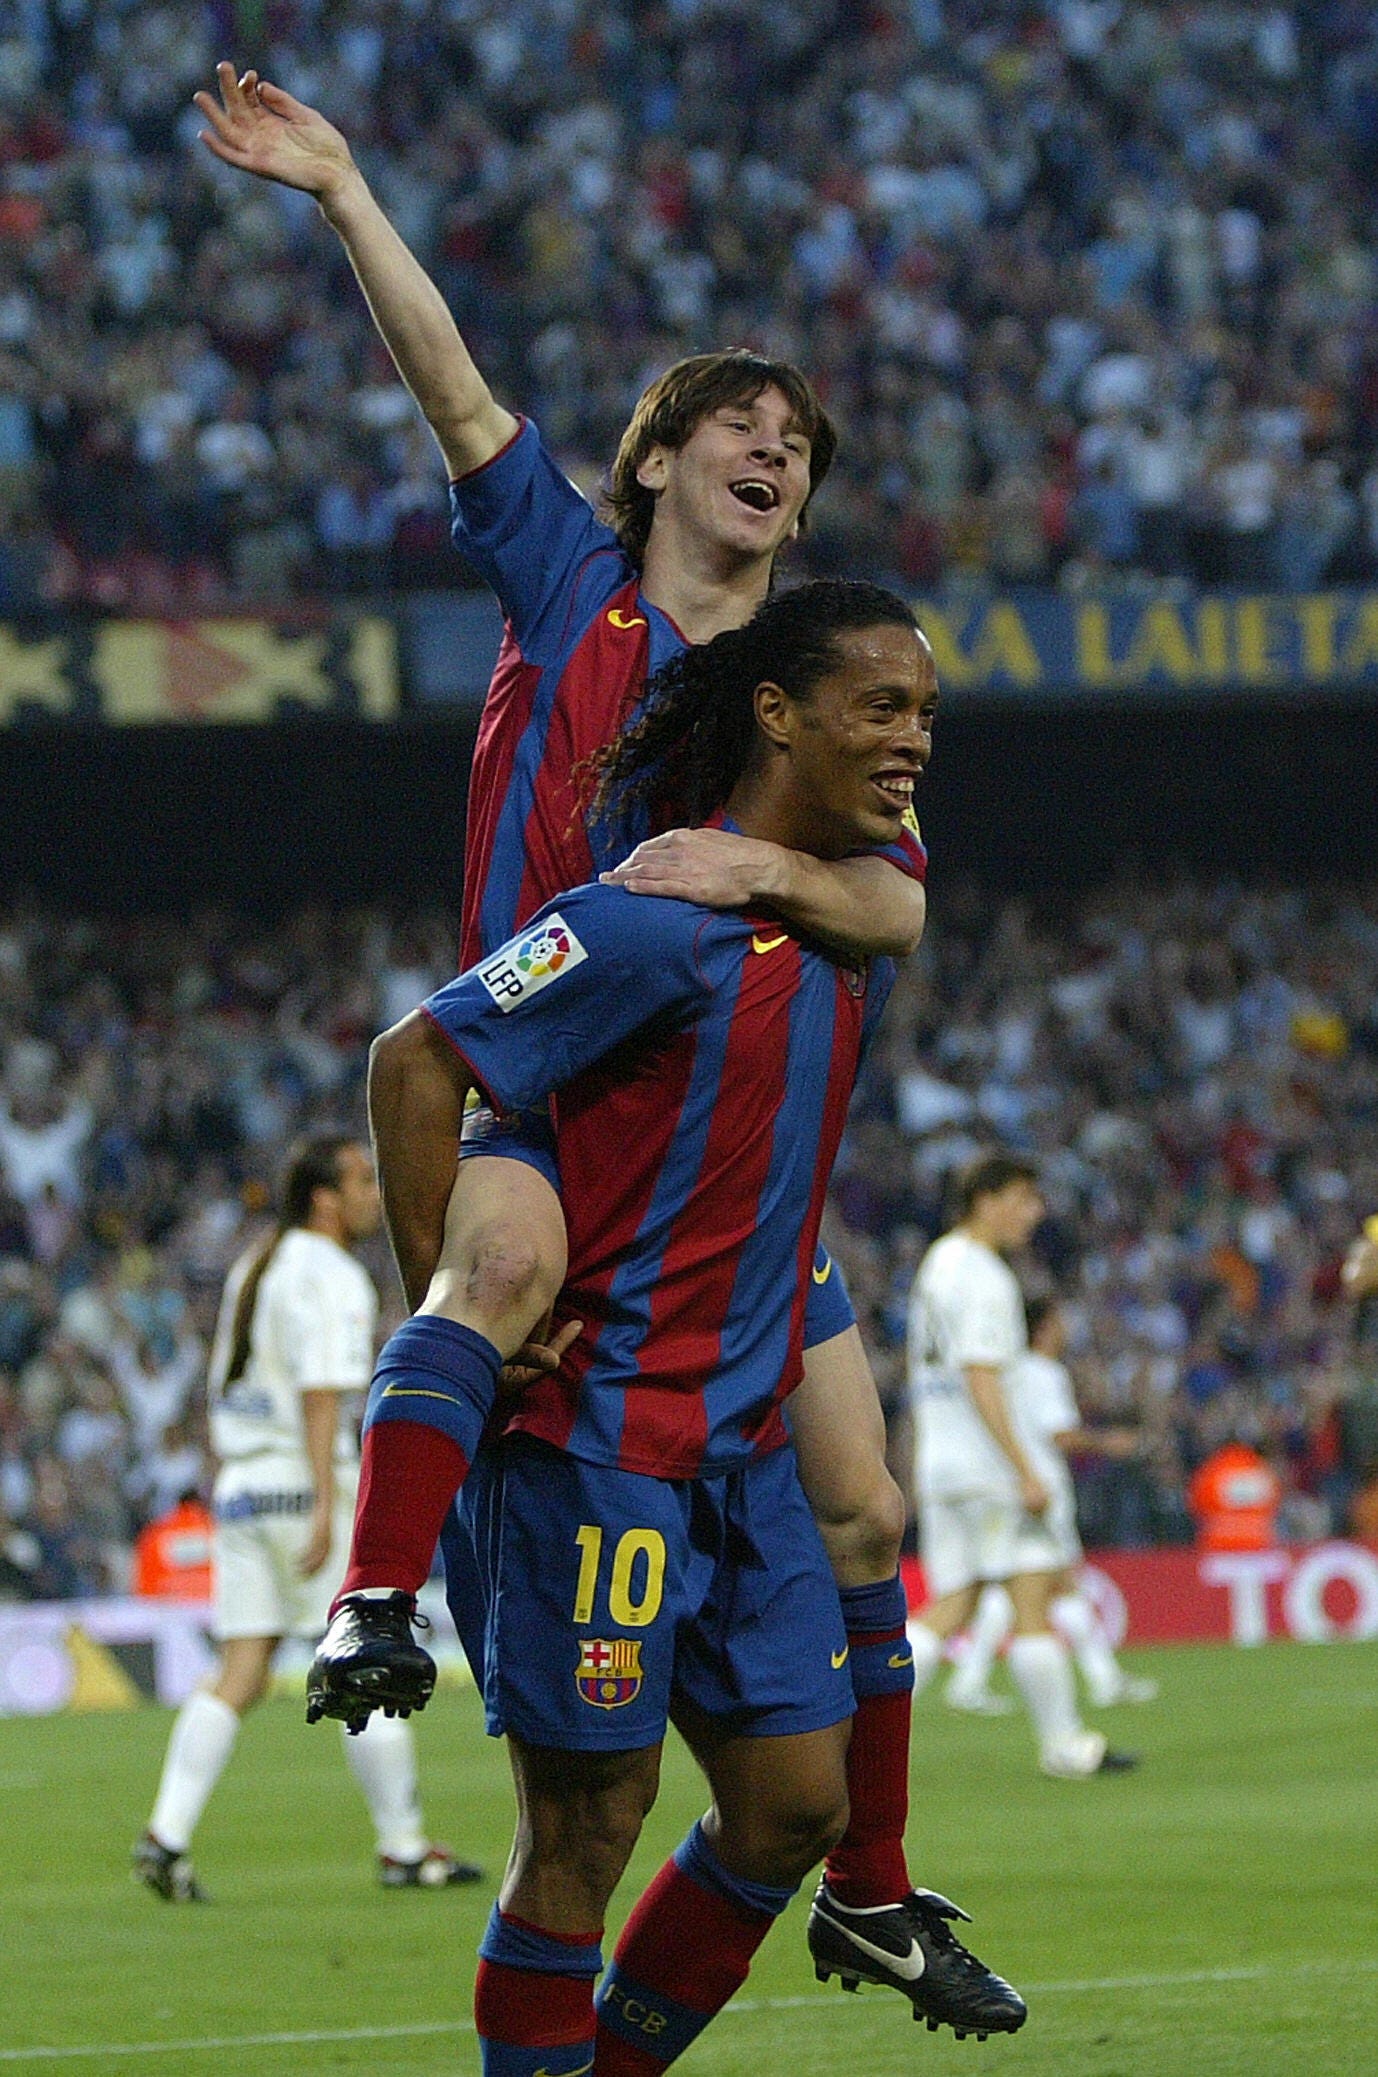 Messi và Ronaldinho đã từng là anh em trong đội tuyển Barca và để lại niềm tự hào cho cả đội bóng. Hãy chiêm ngưỡng những hình ảnh đầy cảm xúc về mối quan hệ đặc biệt giữa hai ngôi sao này trên trang Bleacher Report Football.